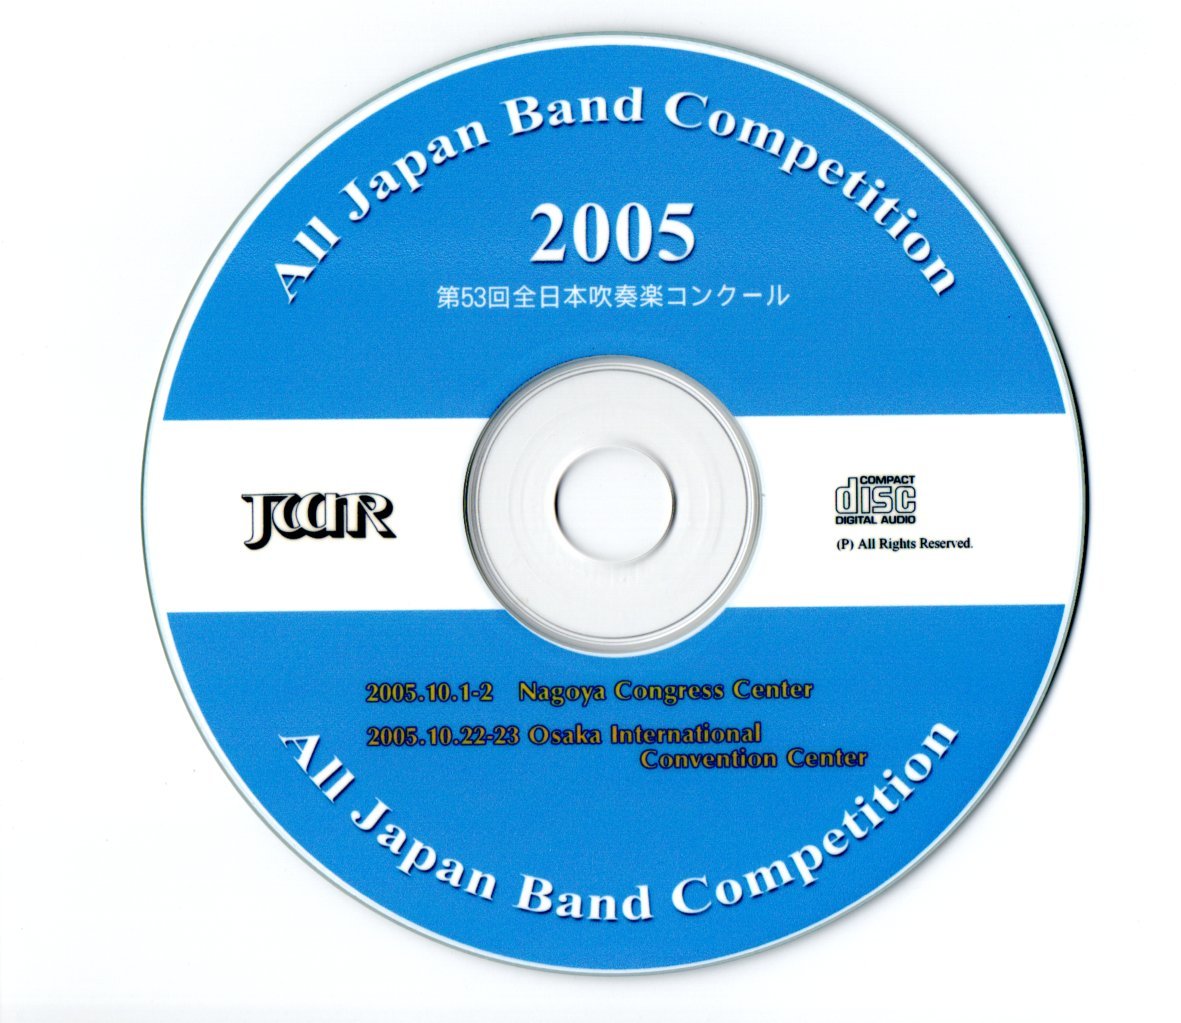 2005年度 全日本吹奏楽コンクール課題曲V 「リベラメンテ」コンデンス 